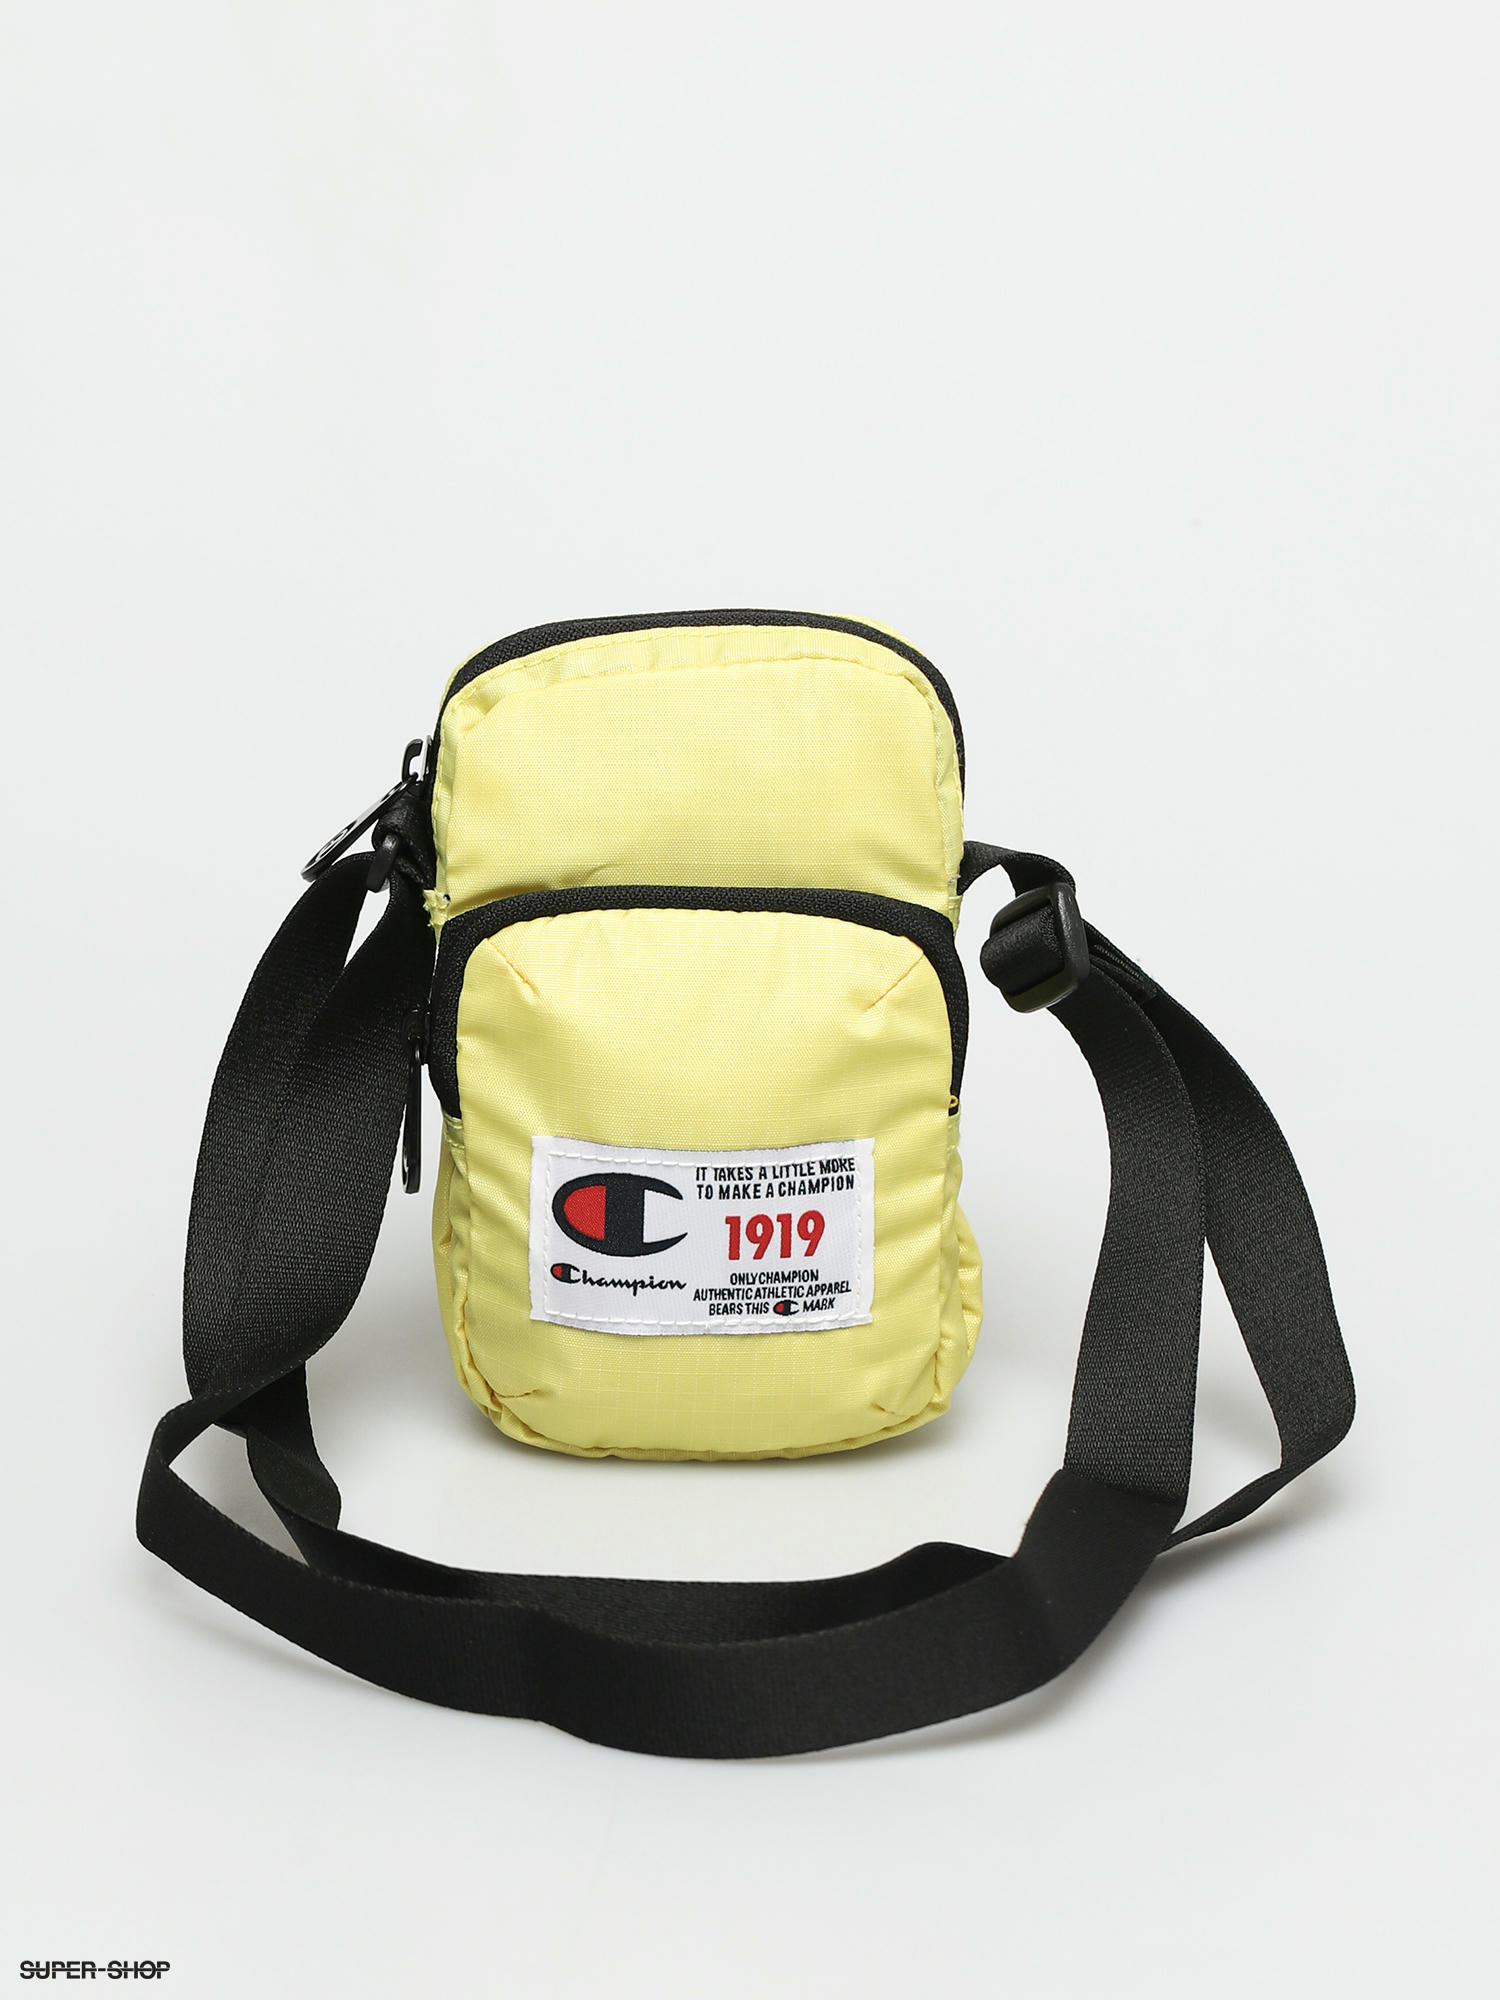 Indica Uplifted Imponerende Champion Mini Shoulder Bag 804778 Bag (lml)